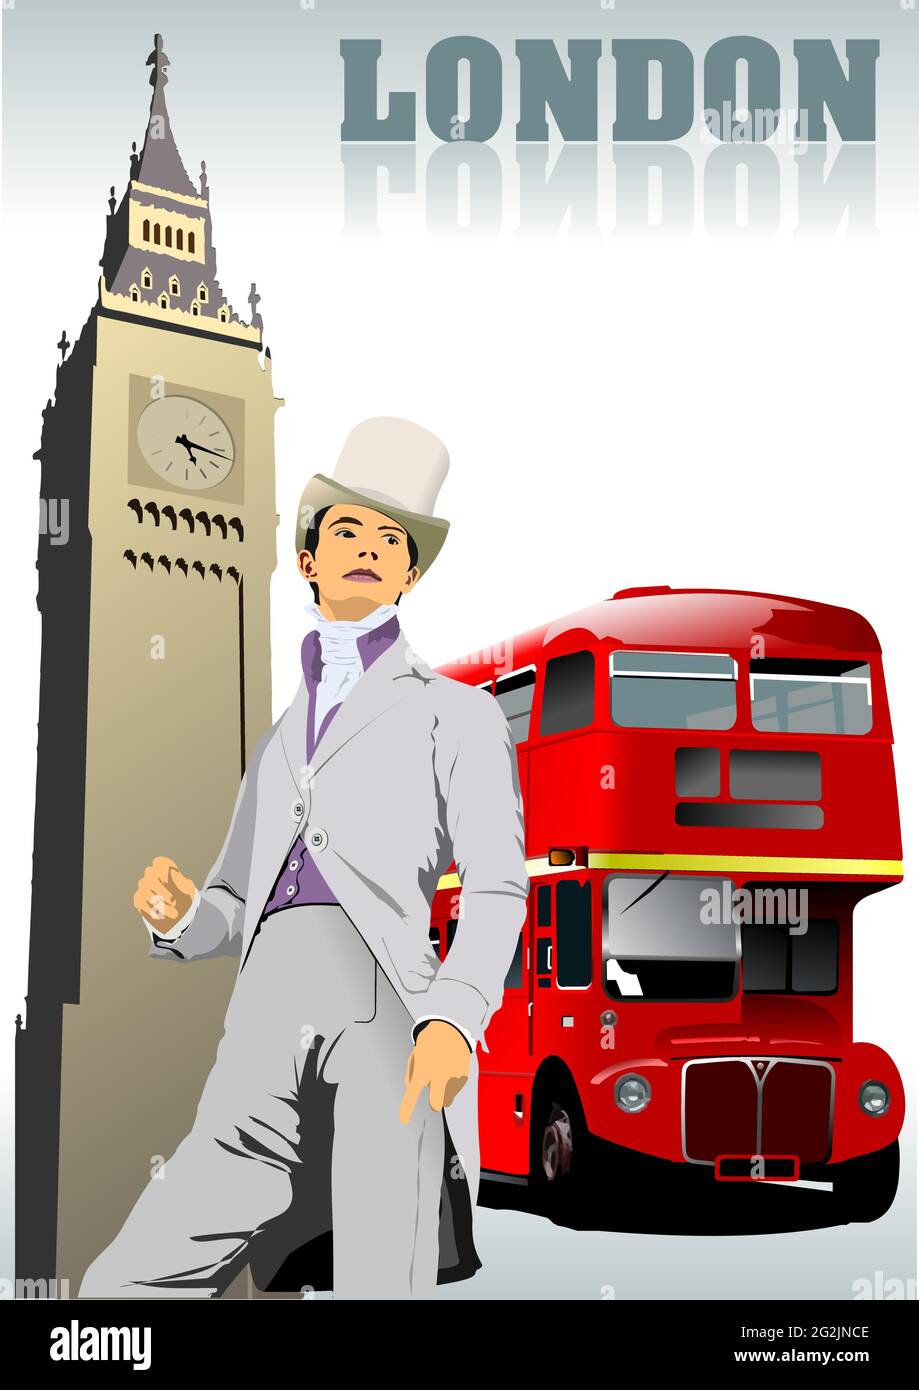 Images de Londres. Illustration vectorielle 3d couleur Illustration de Vecteur